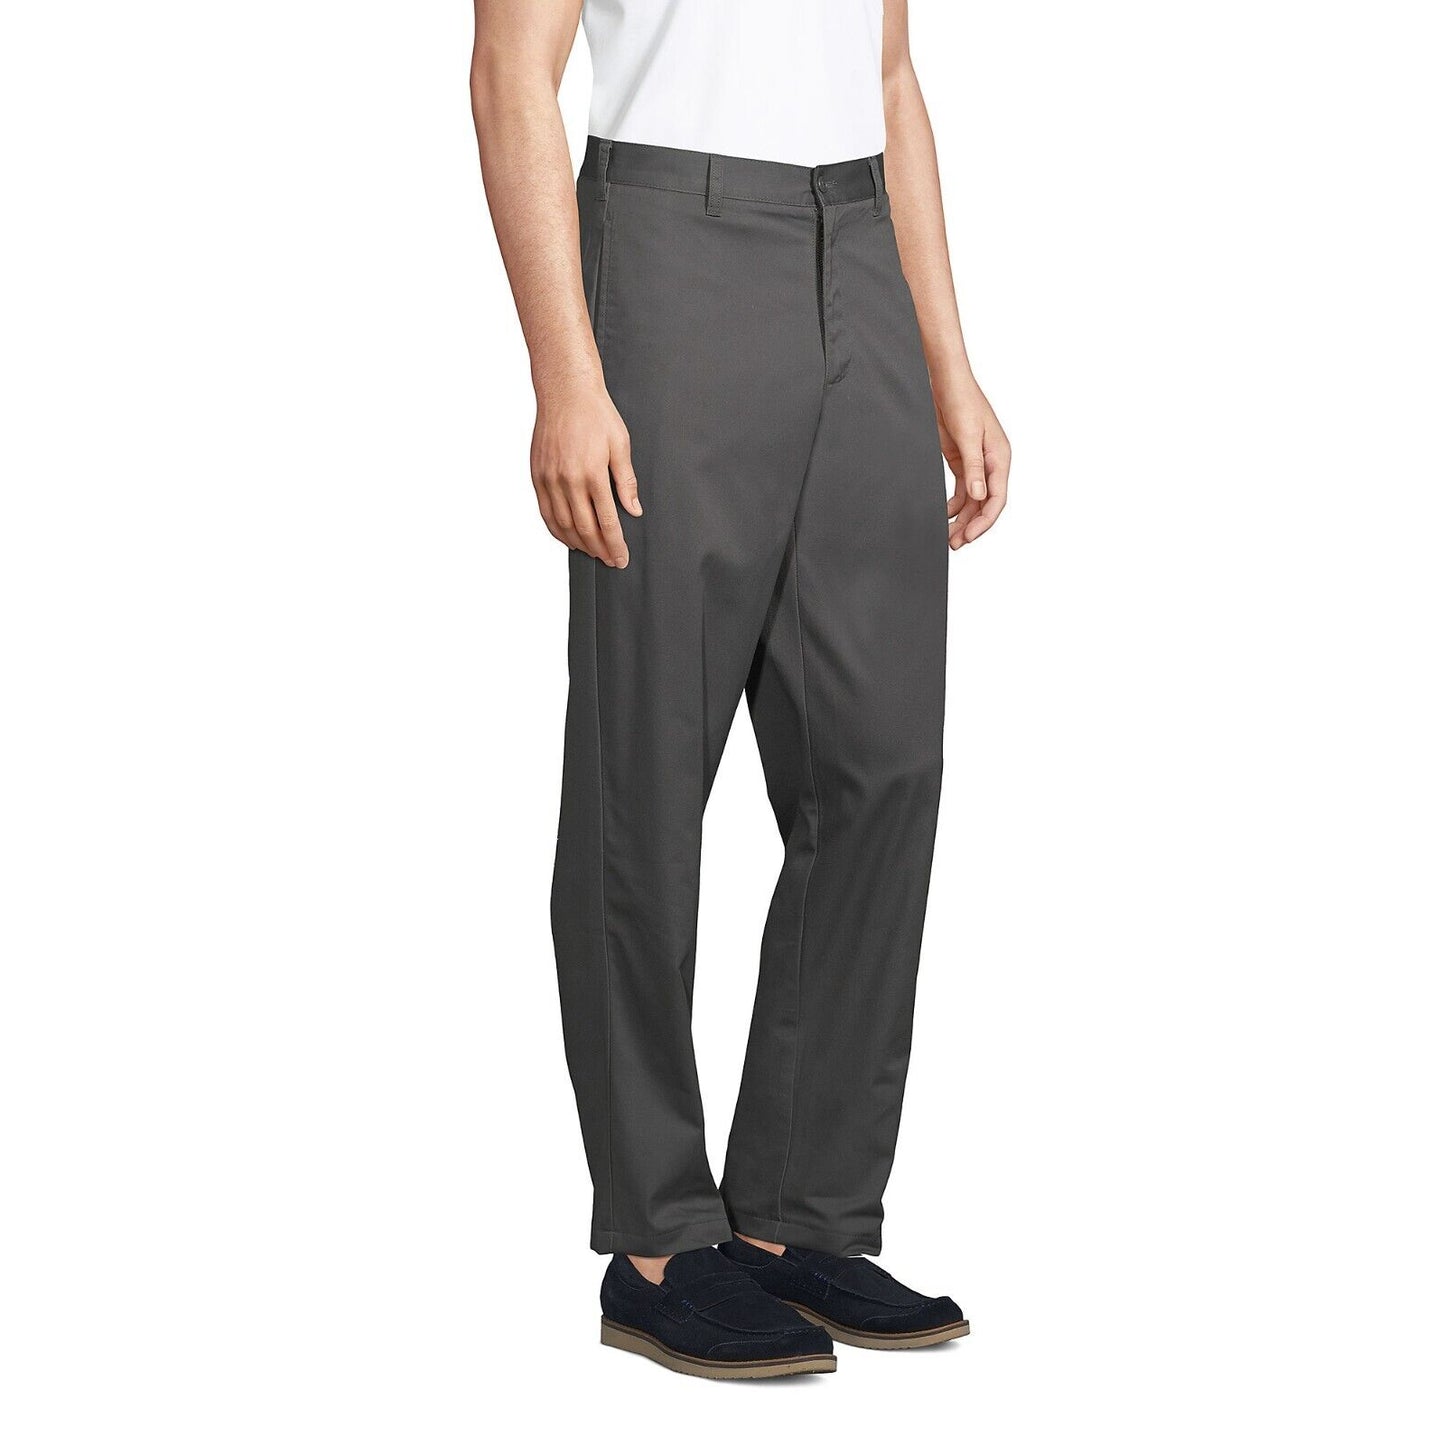 Men's Blend Plain Front Chino Pants Size 31